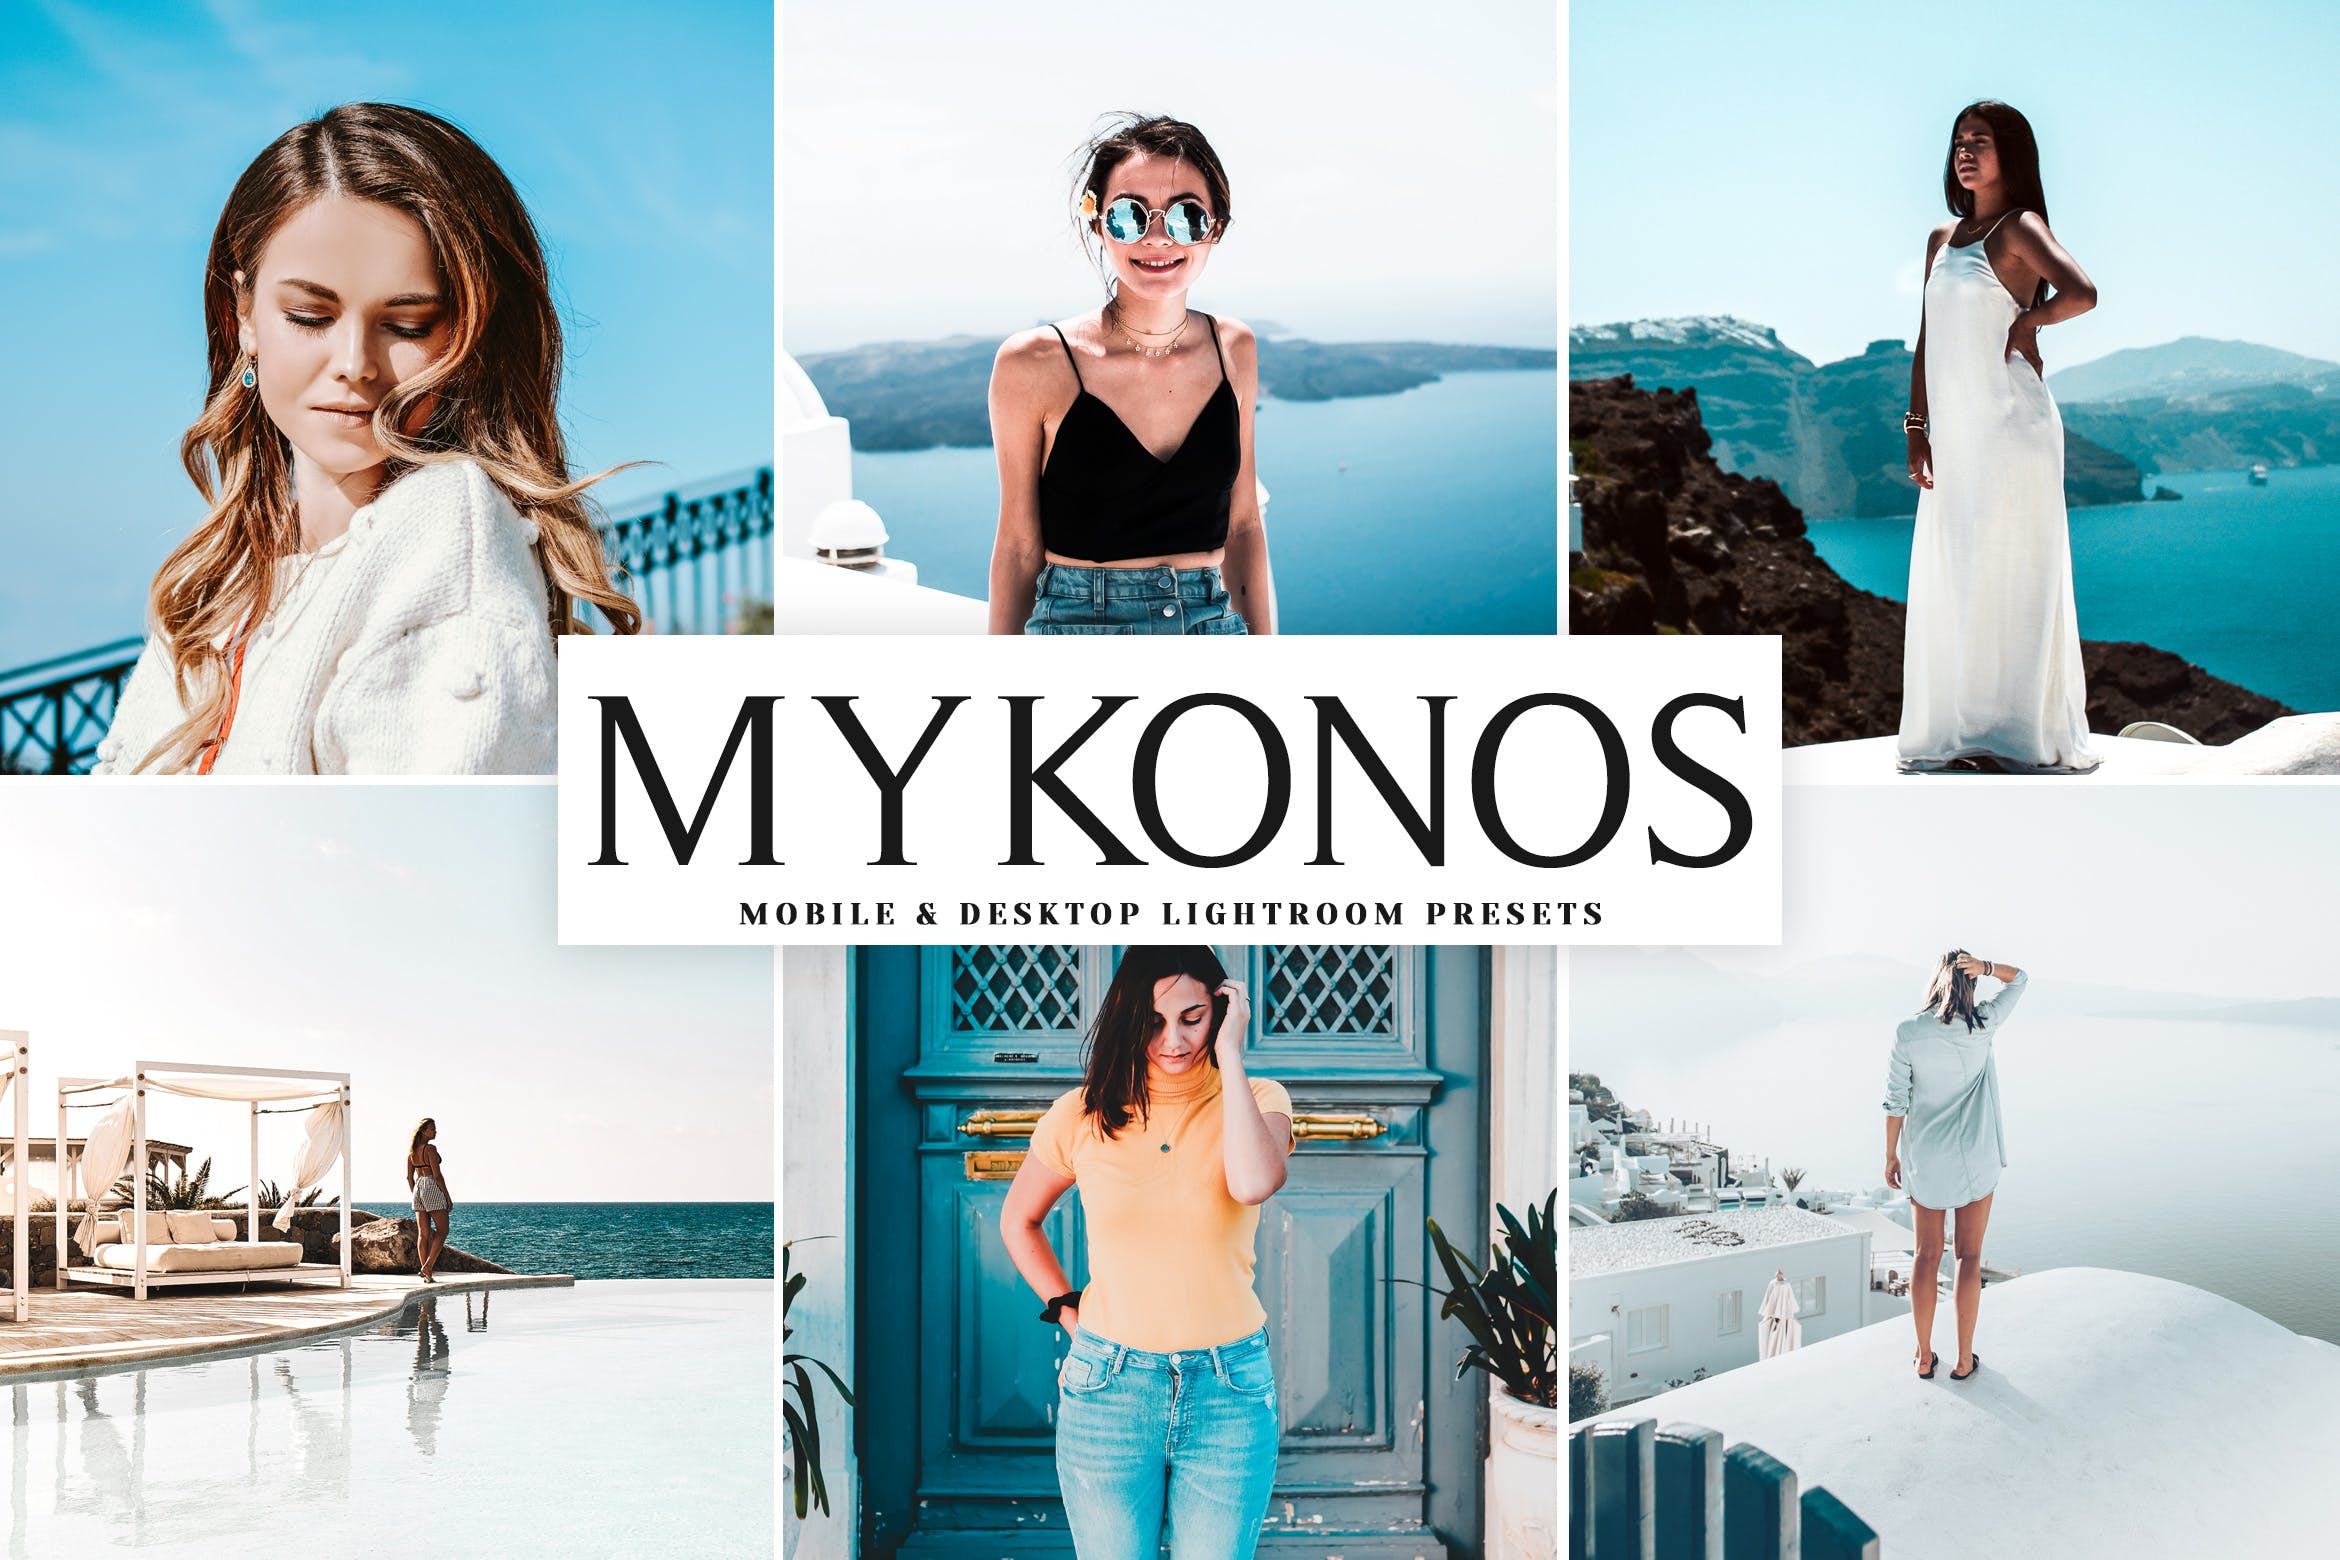 明亮色调风格肖像摄影蚂蚁素材精选LR预设下载 Mykonos Mobile & Desktop Lightroom Presets插图